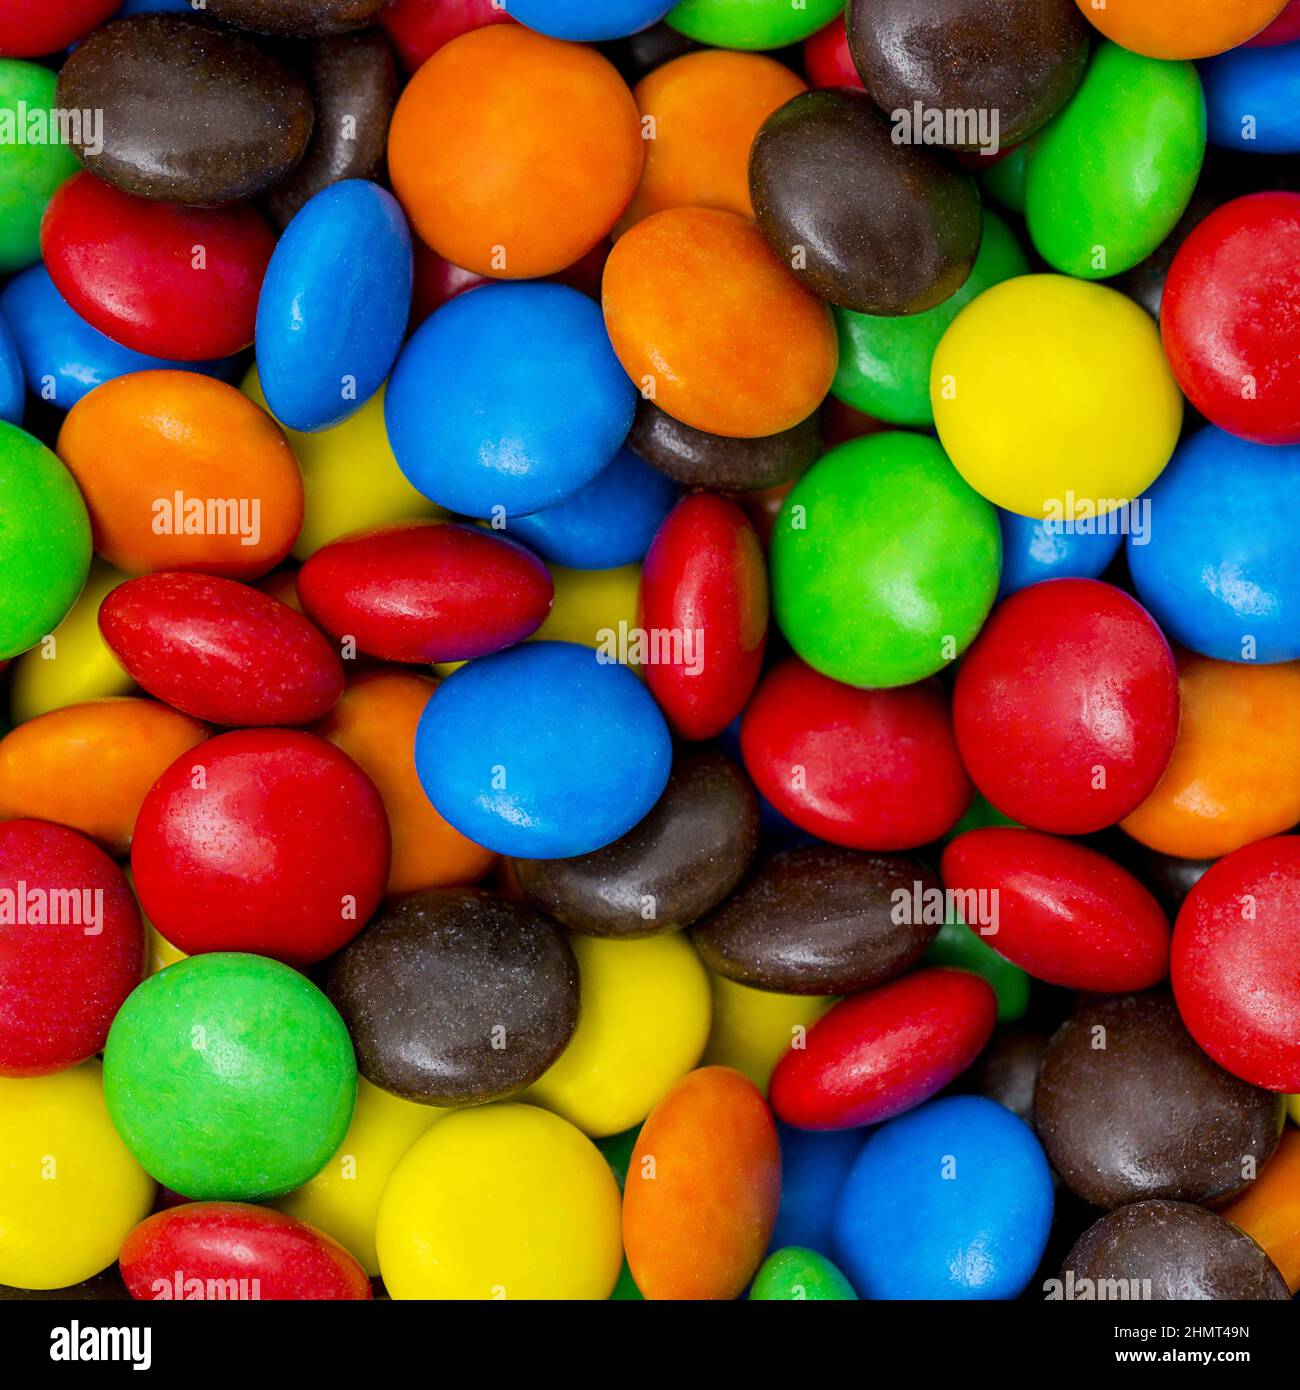 les lentilles au chocolat sont des bonbons colorés Banque D'Images